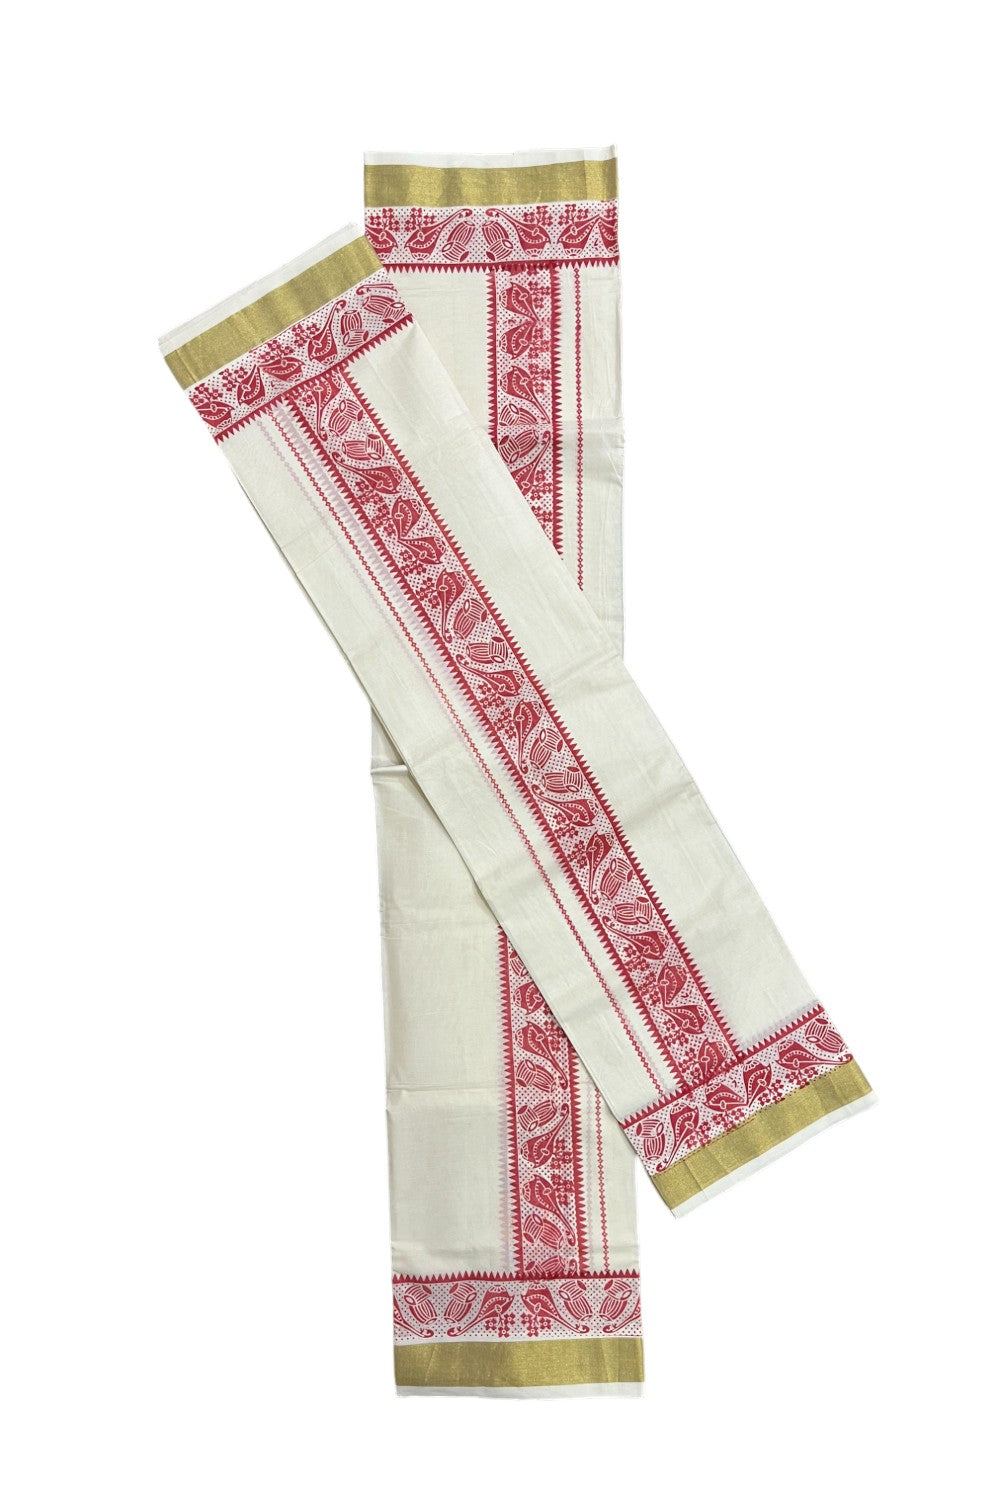 Kerala Cotton Single Set Mundu (Mundum Neriyathum) with Red Block Prints and Kasavu Border - 2.80Mtrs